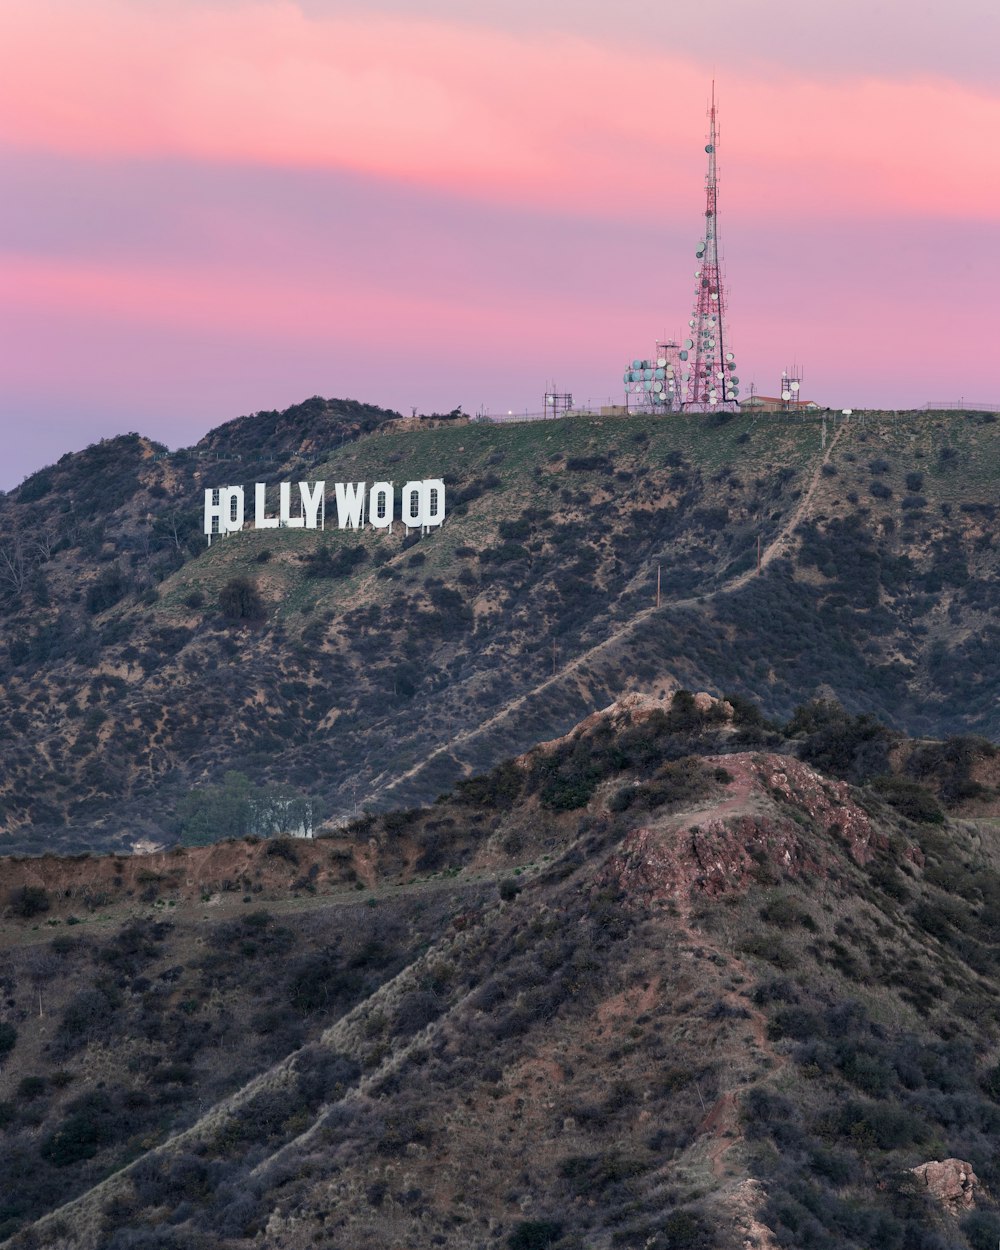 Hollywood signage on mountain